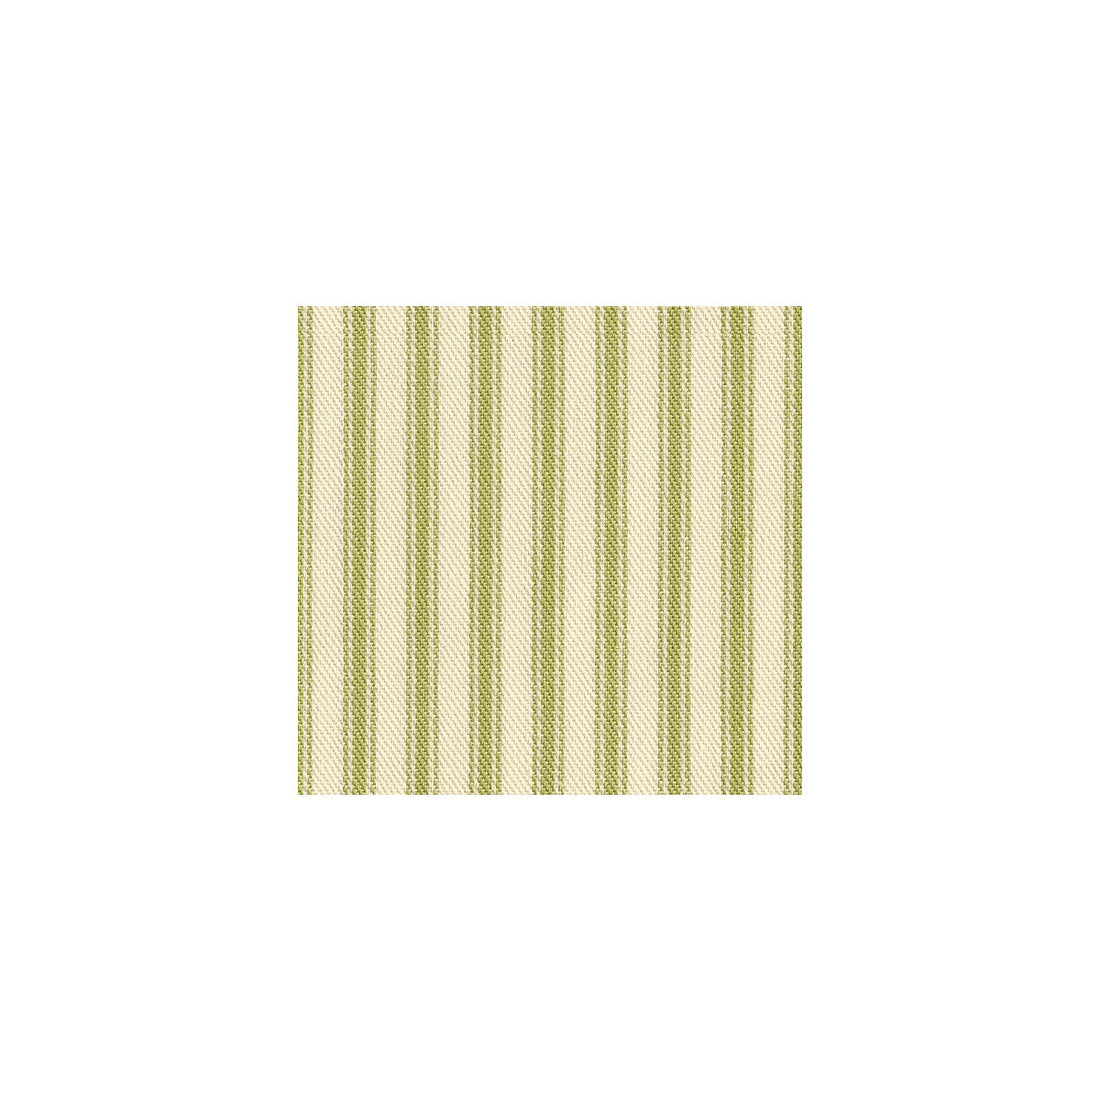 Kravet Basics fabric in 31571-30 color - pattern 31571.30.0 - by Kravet Basics